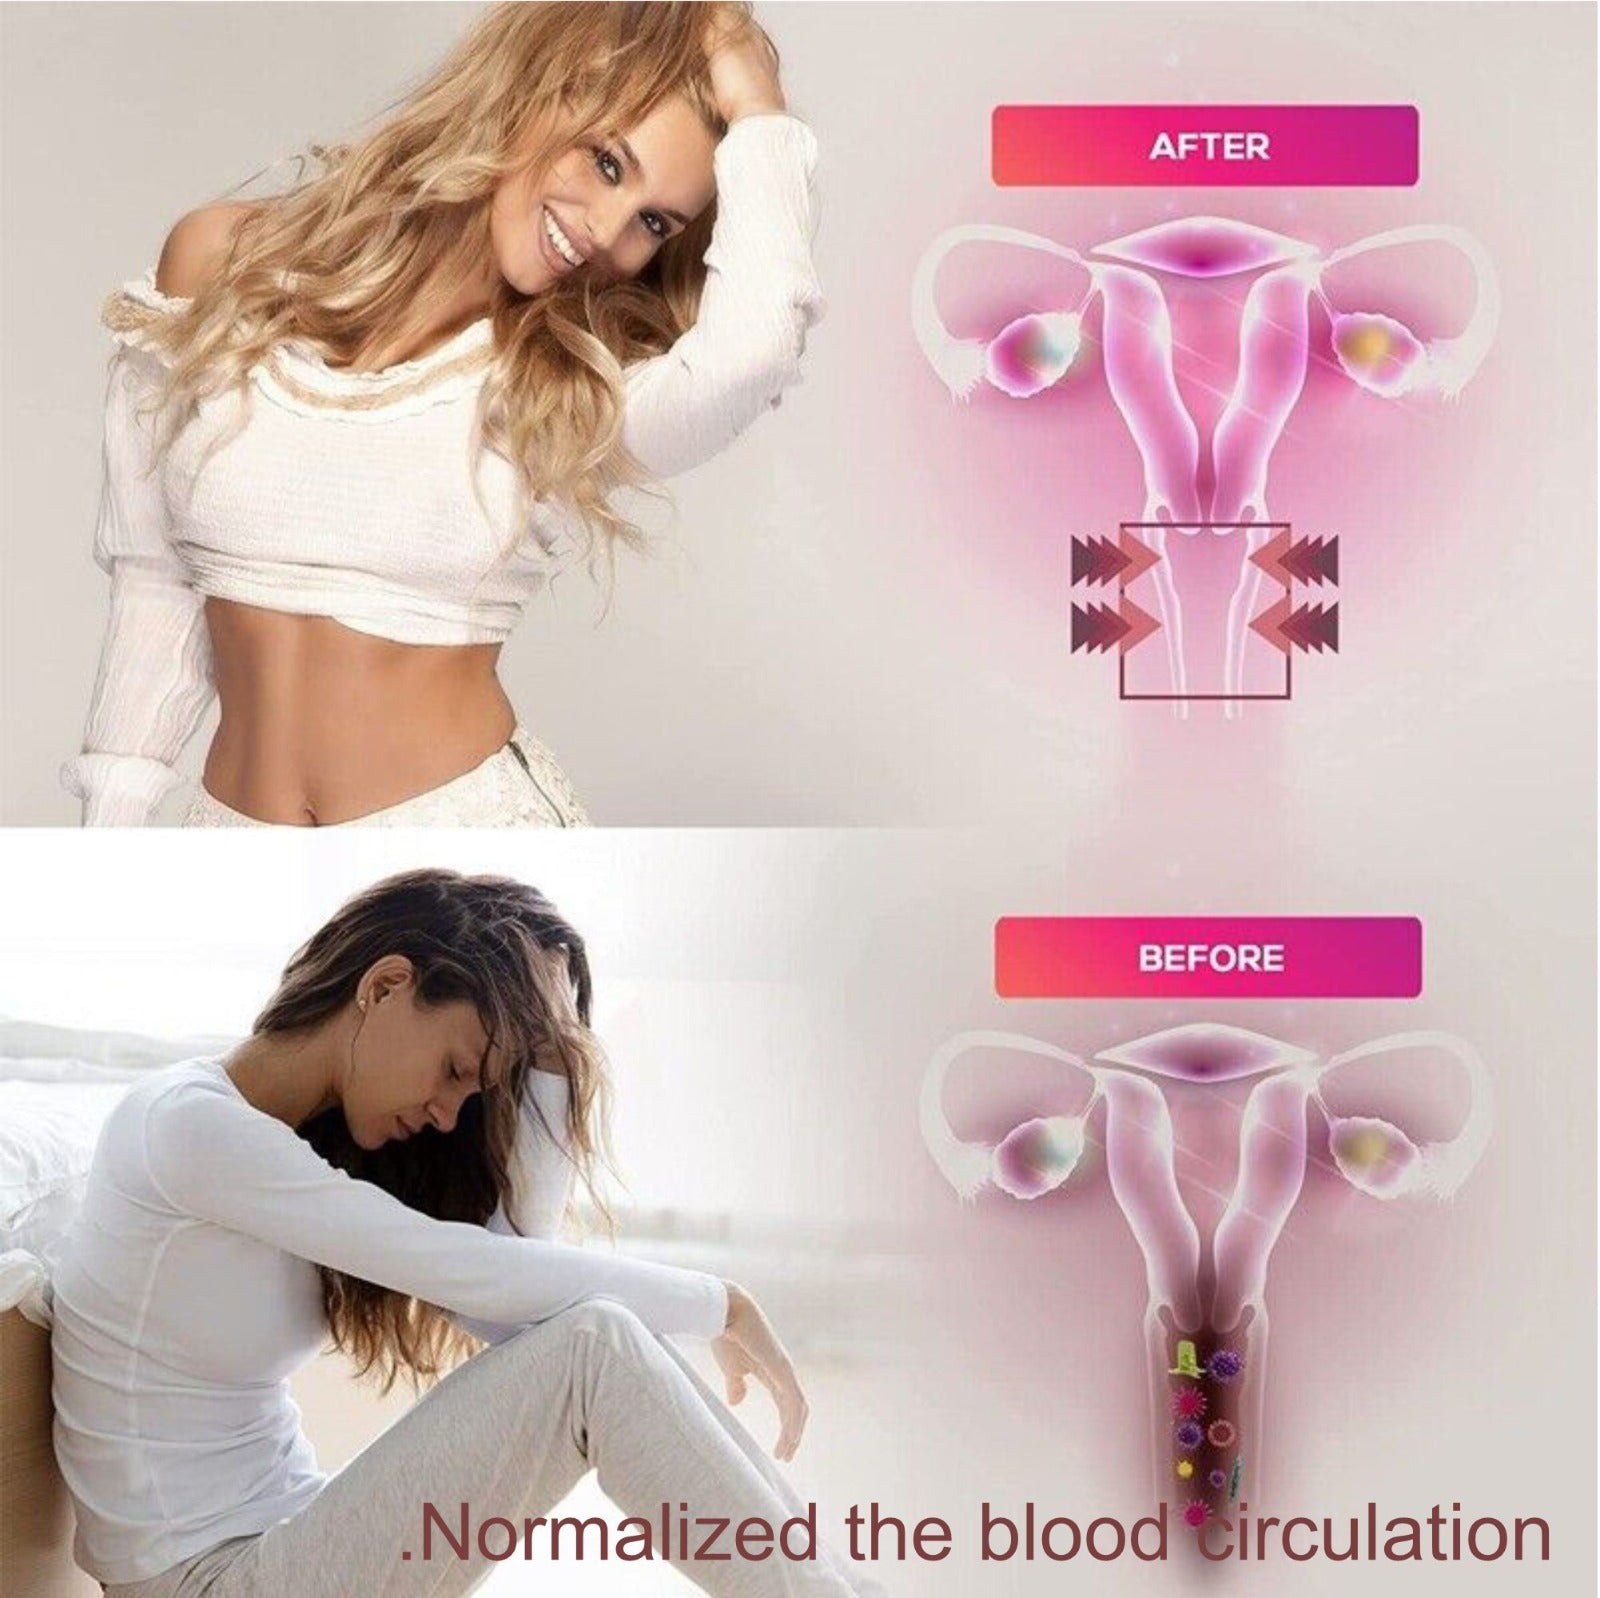 Feminine Tightening vaginal gel